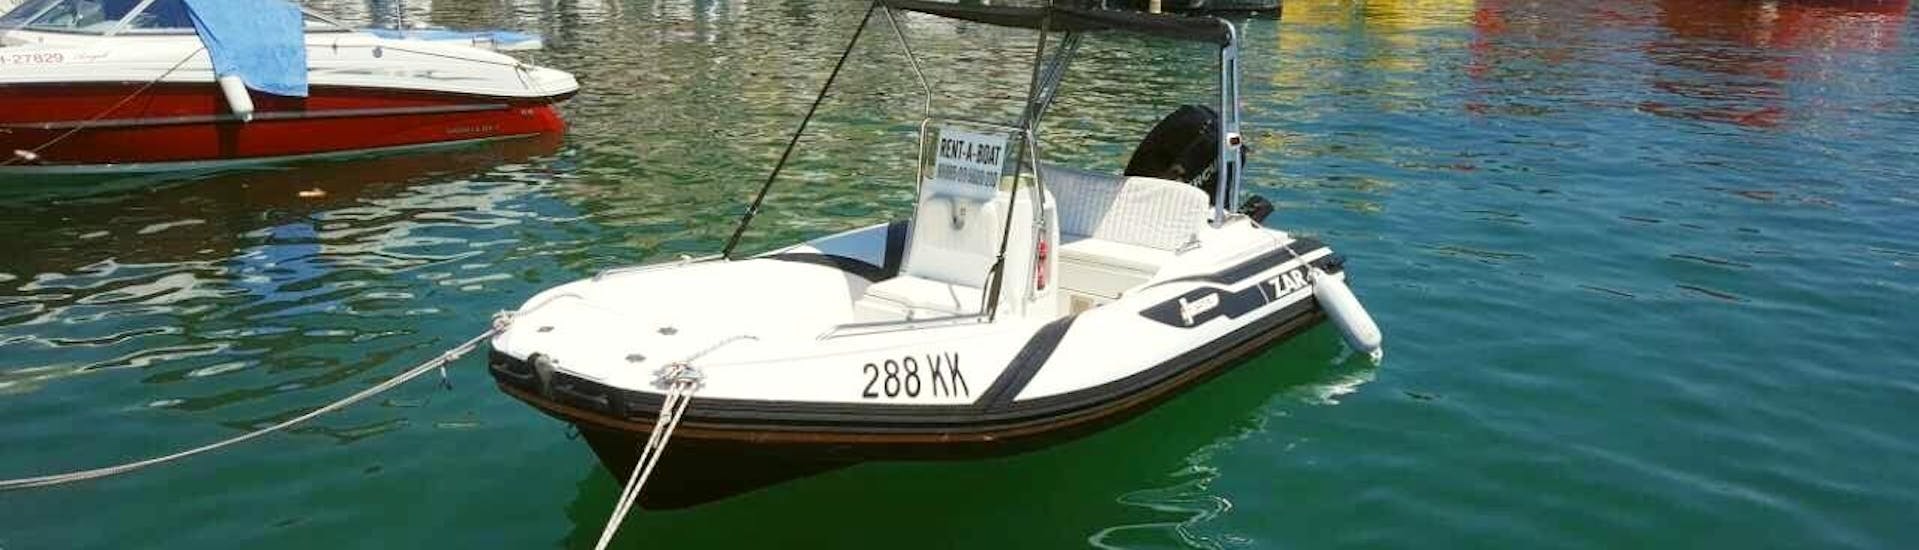 Barco disponible para un alquiler de motor para 5 personas en Krk con Rent a Boat Phoenix.